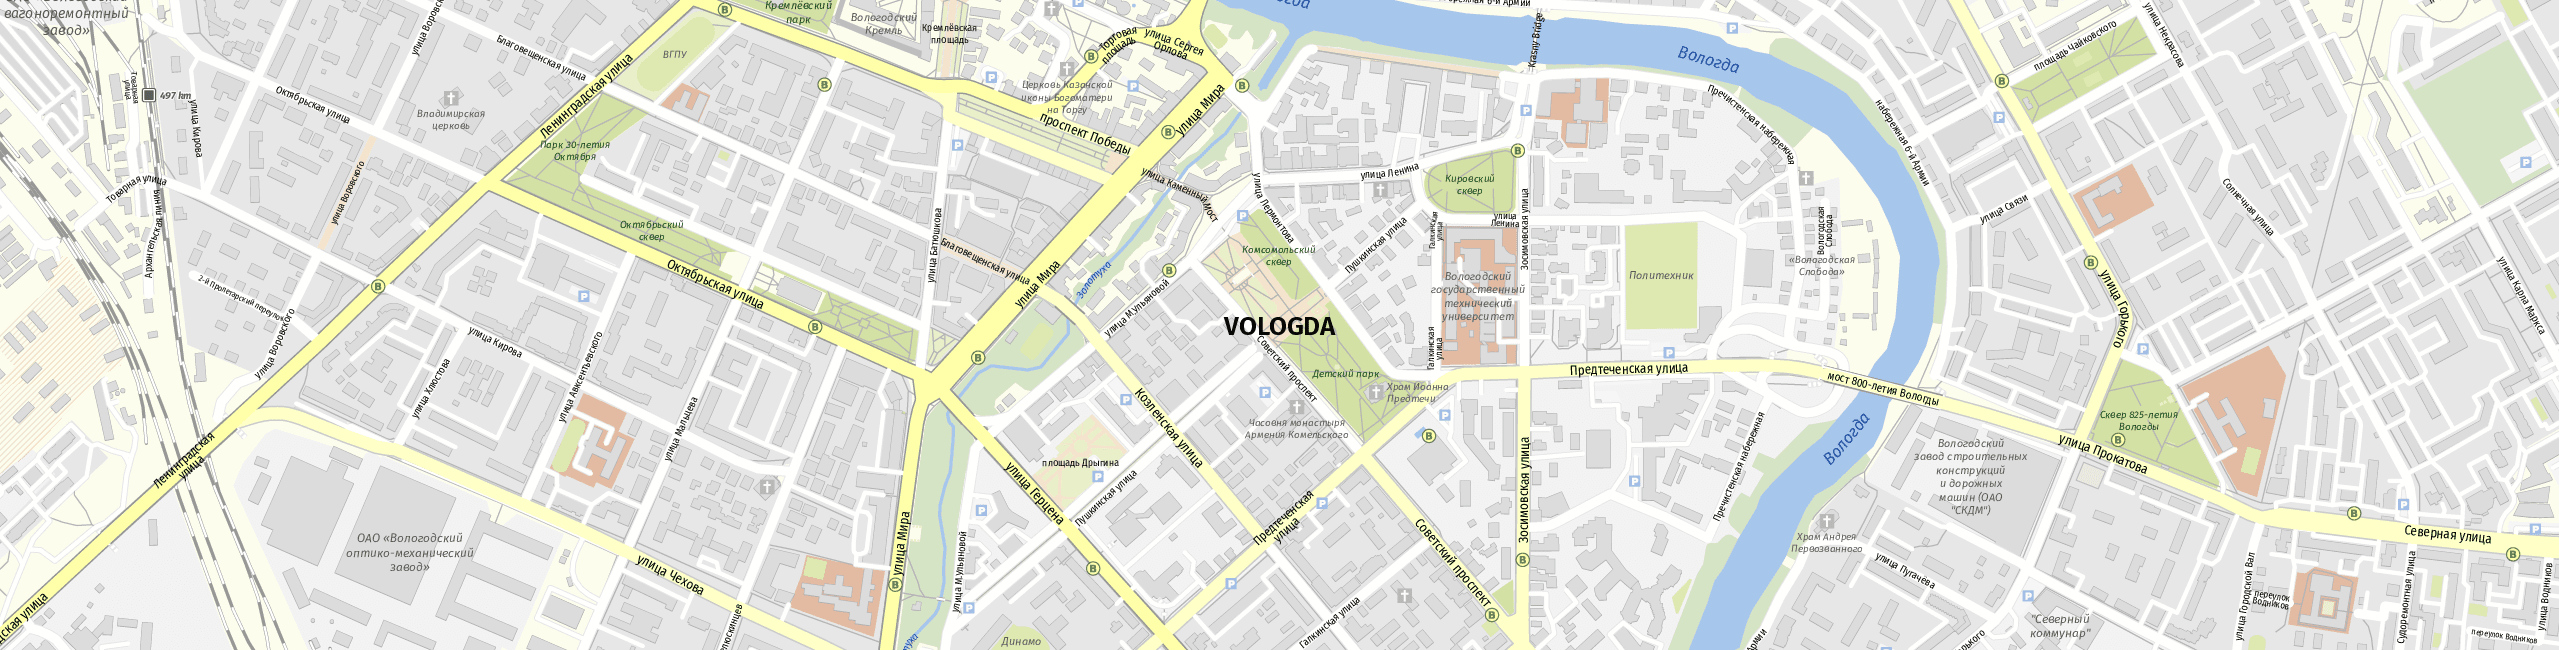 Stadtplan Vologda zum Downloaden.